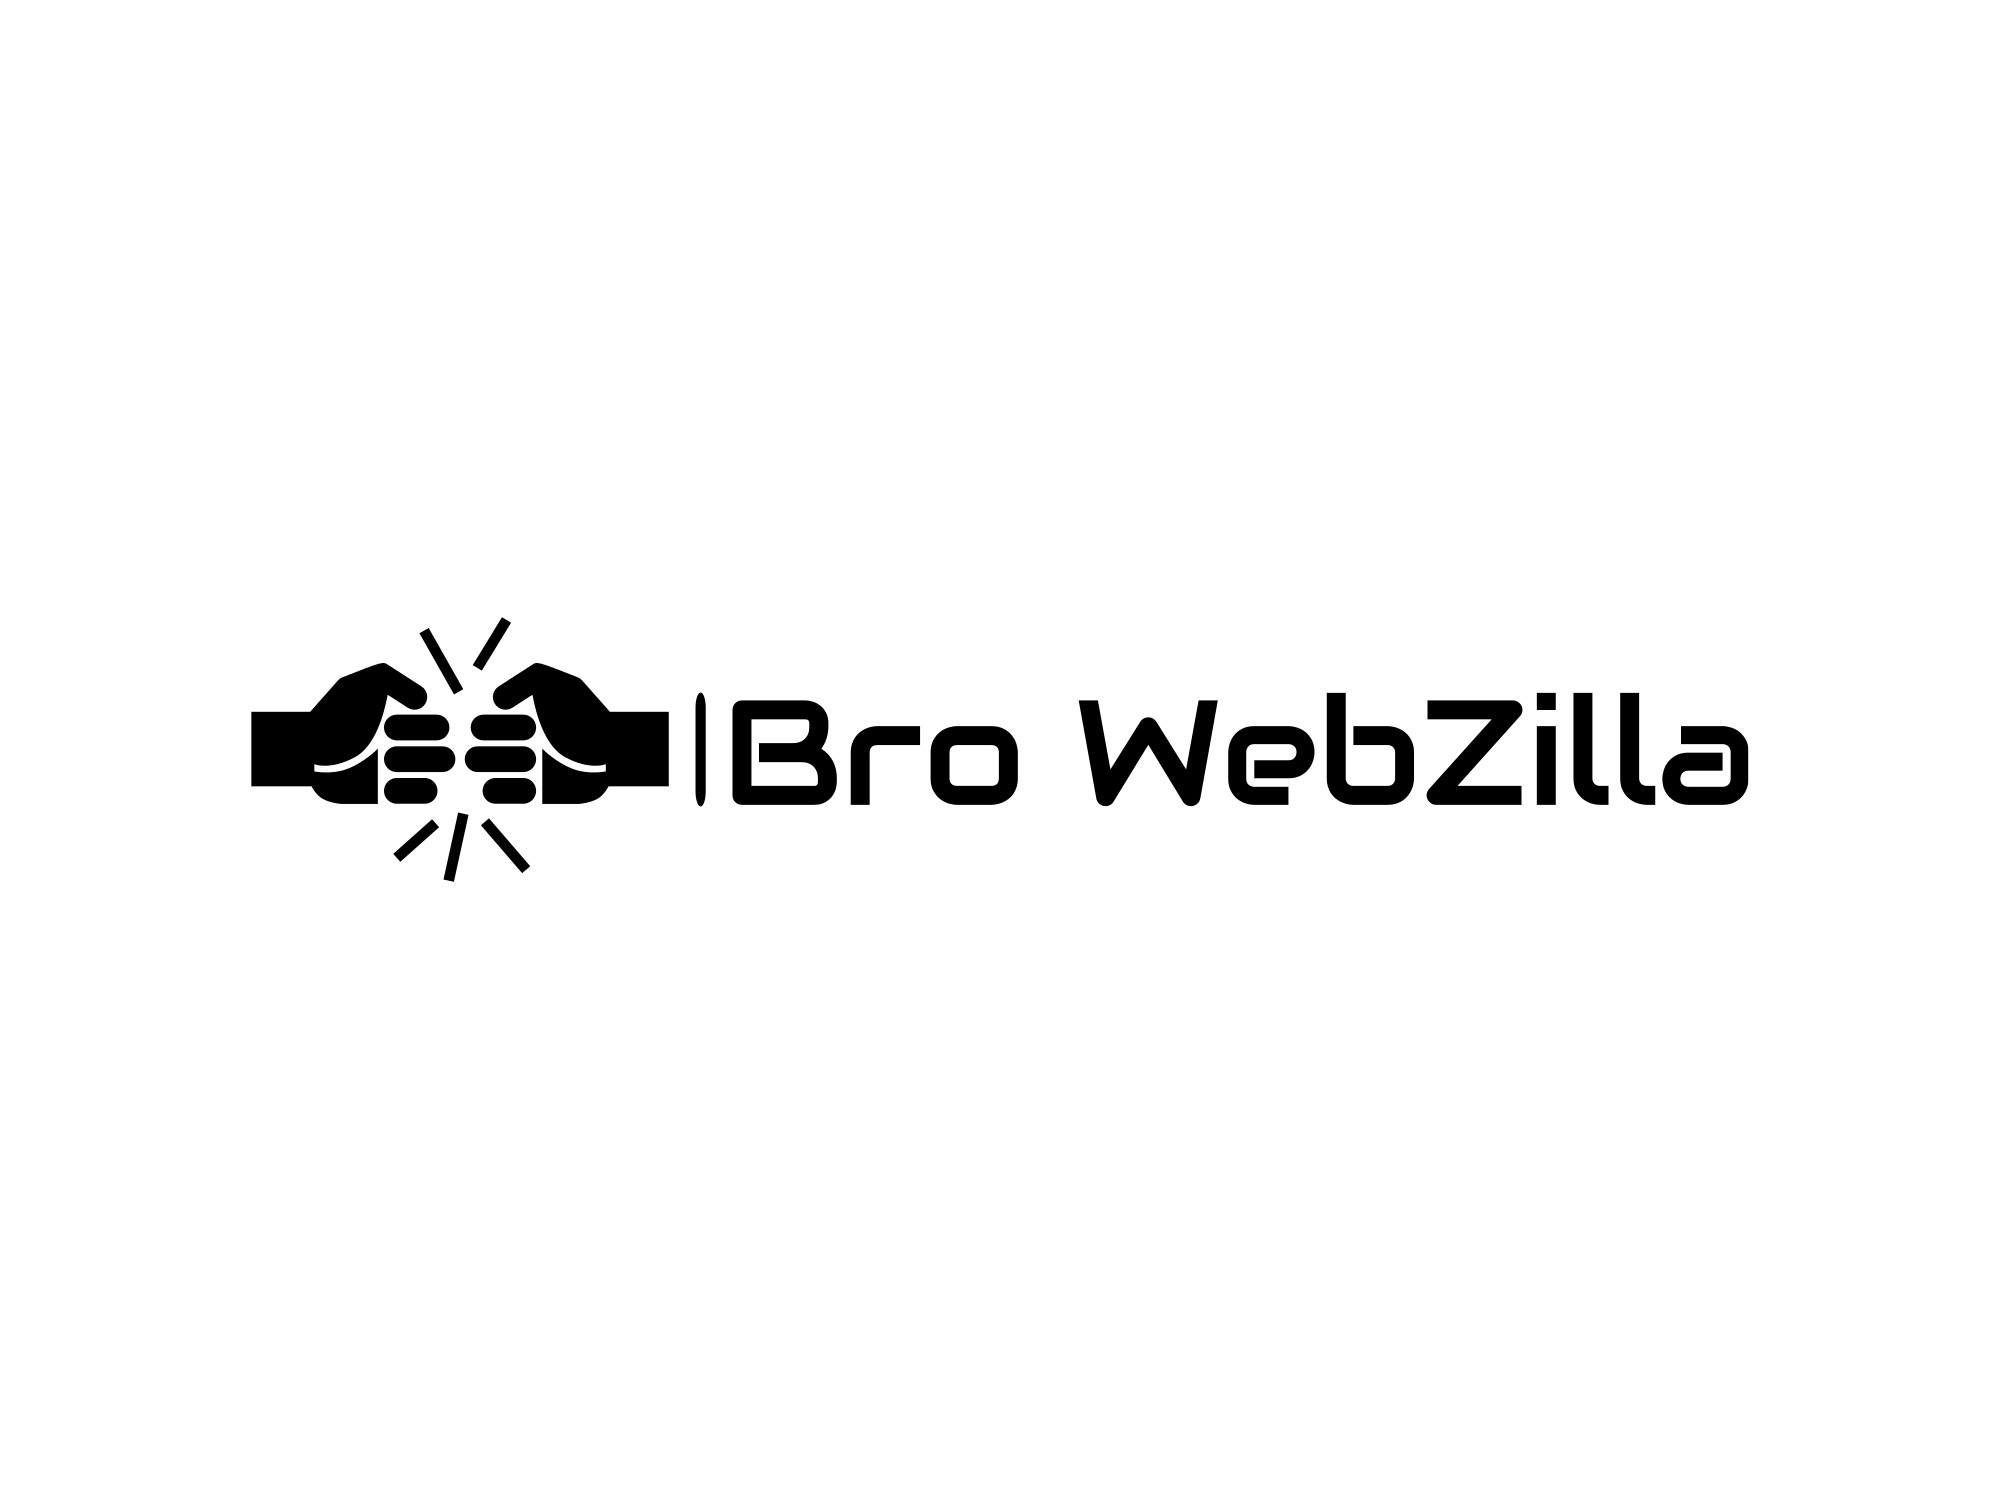 Bro WebZilla